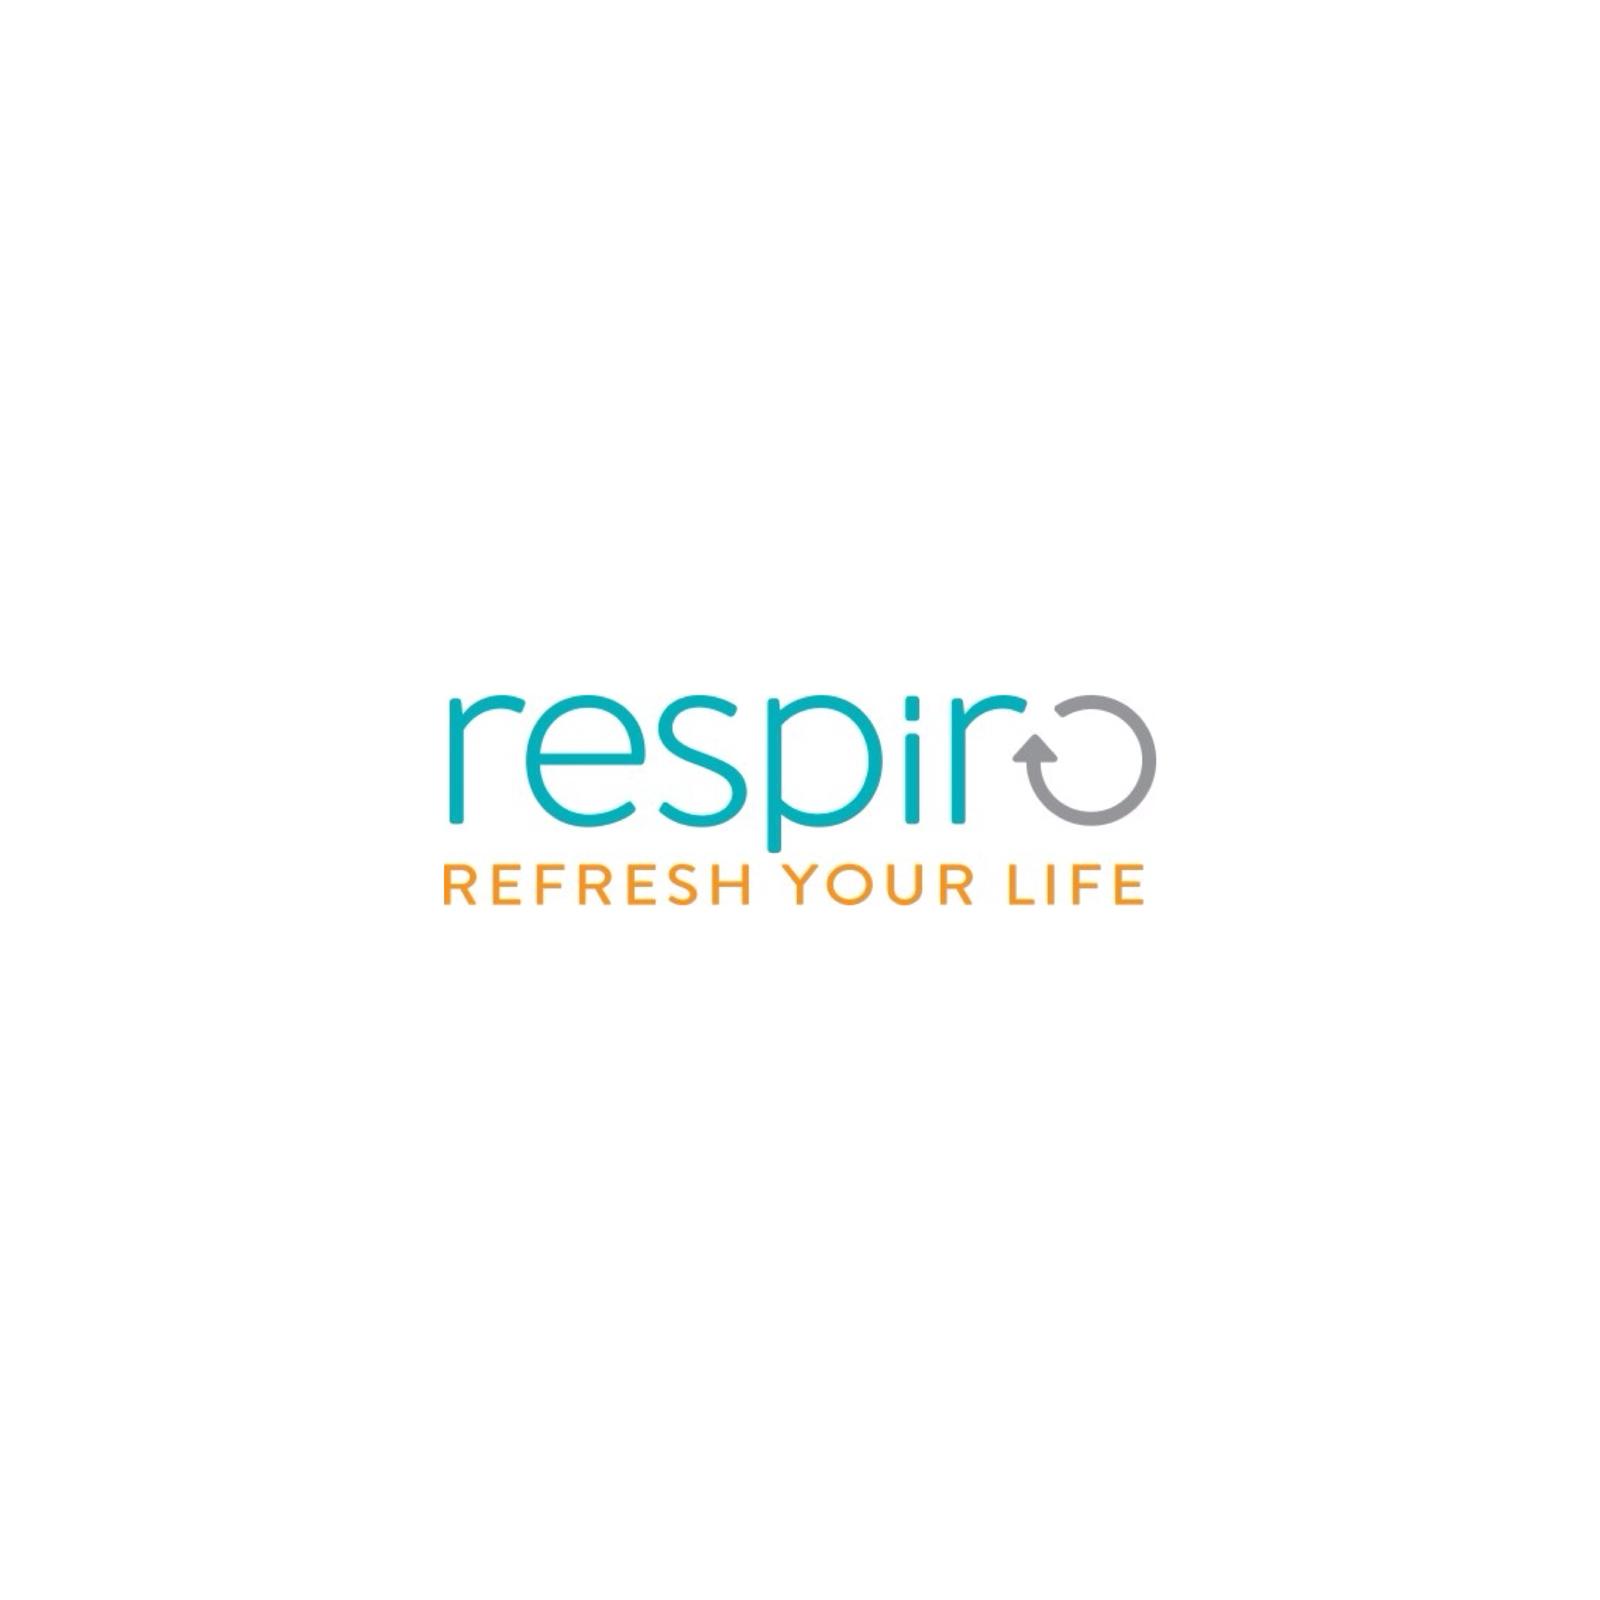 Asociația Respiro logo